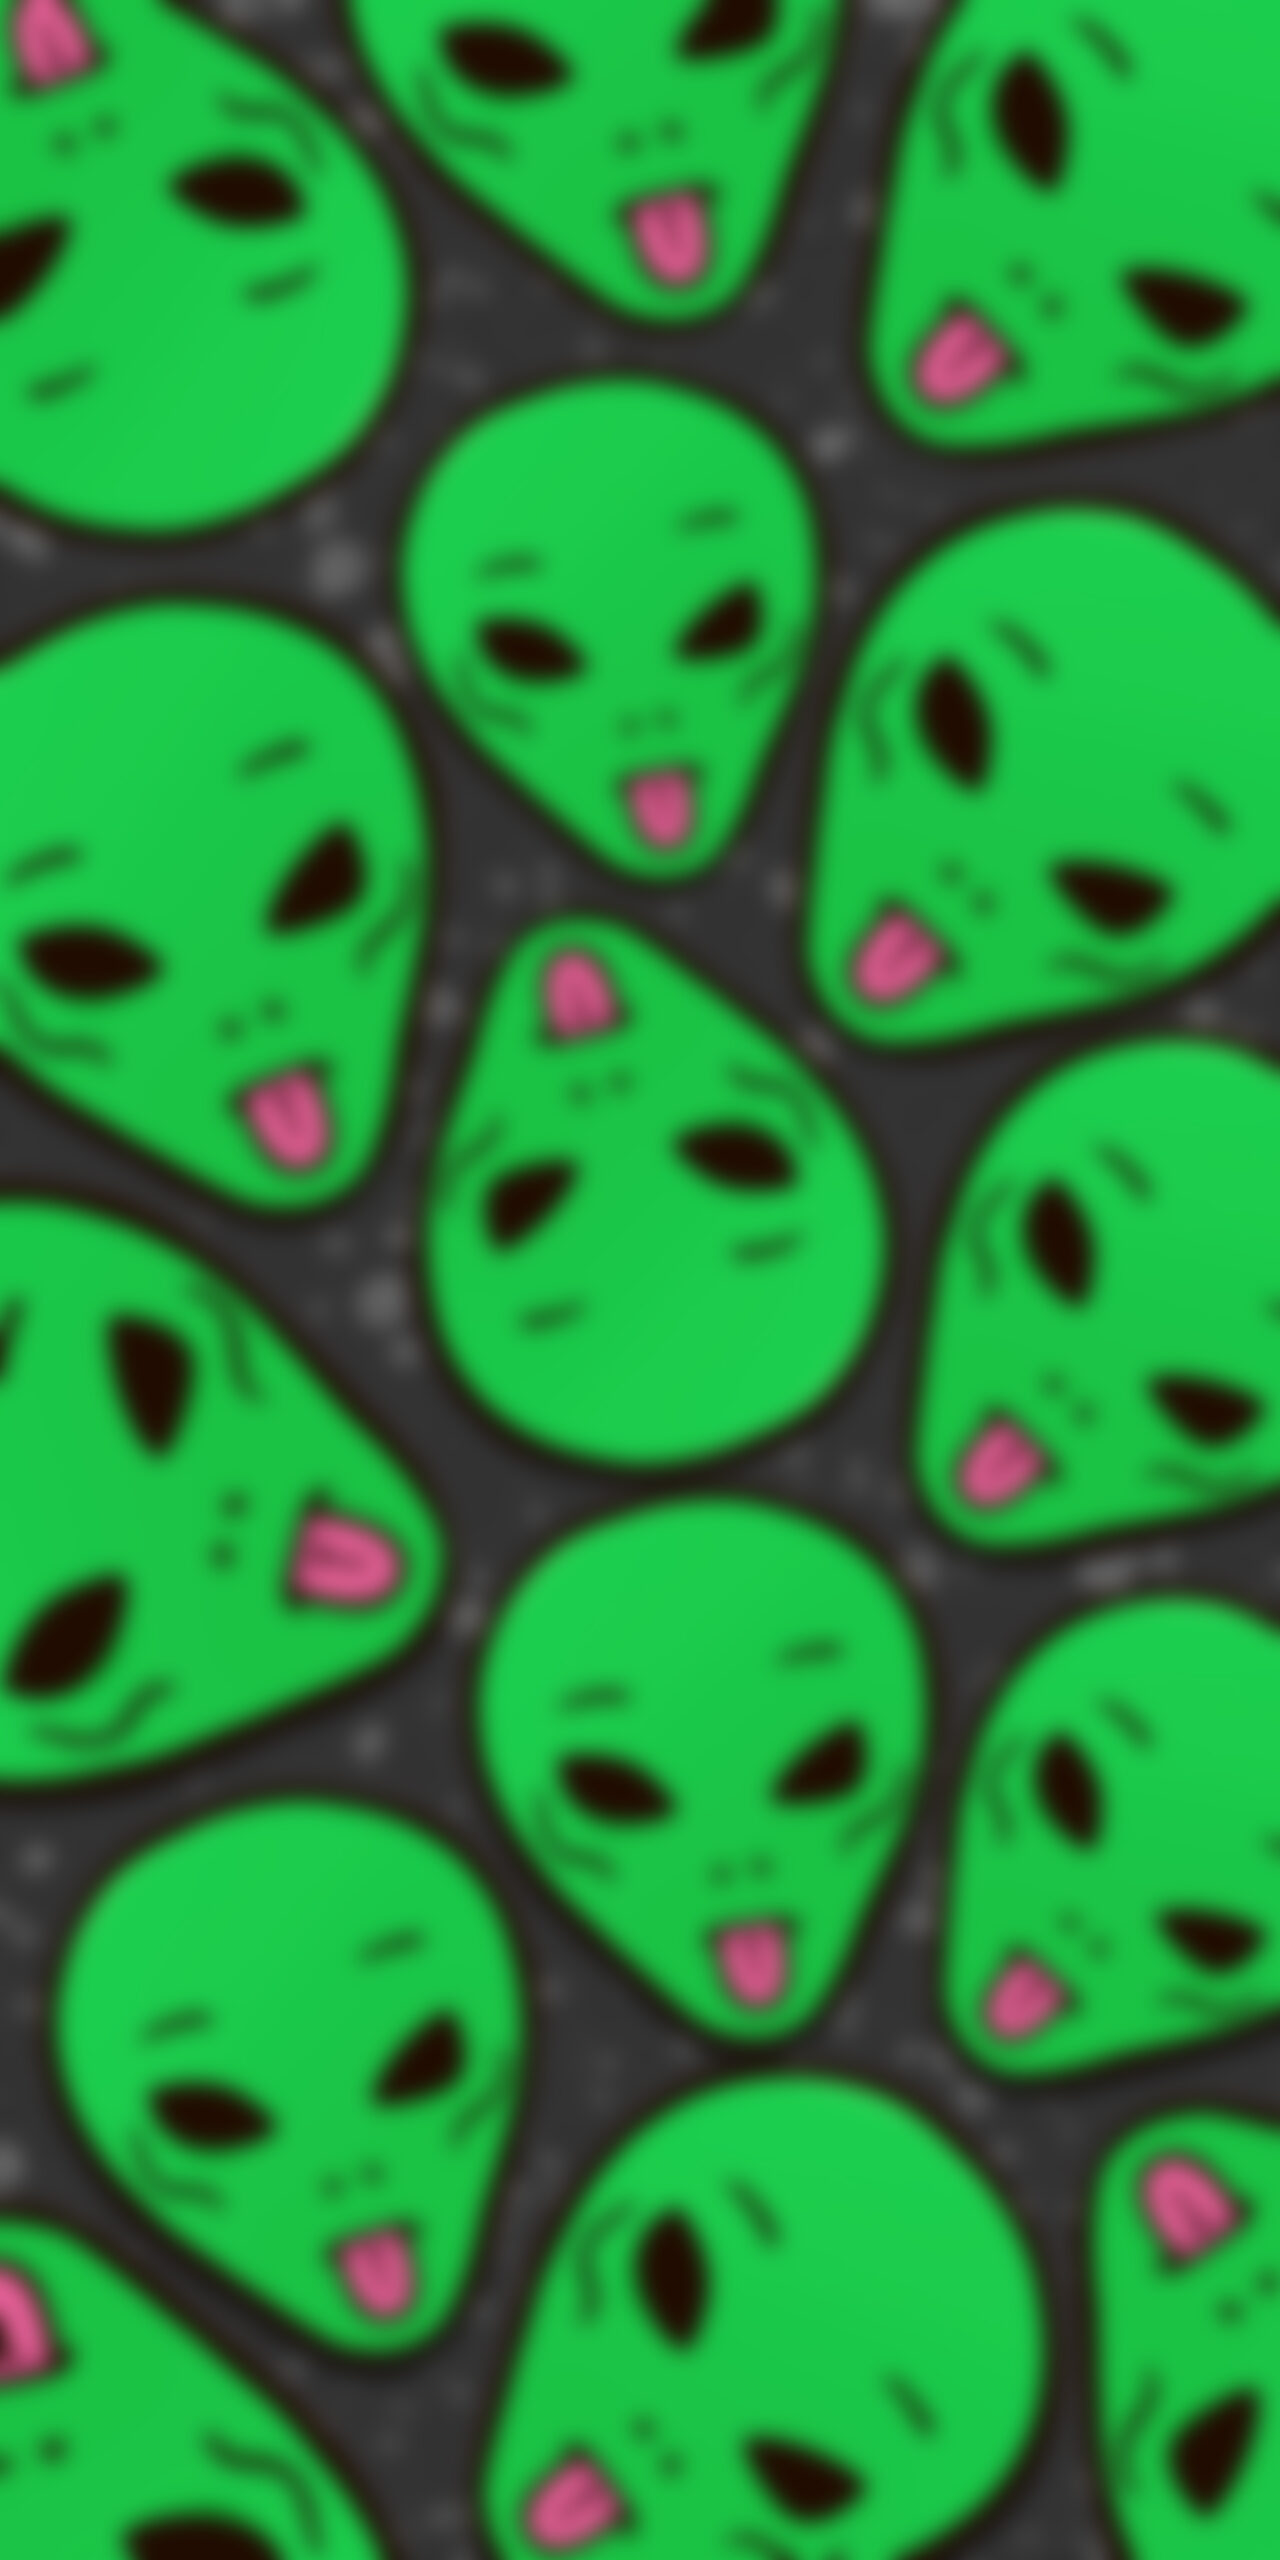 ripndip lord alien green dark blur wallpaper